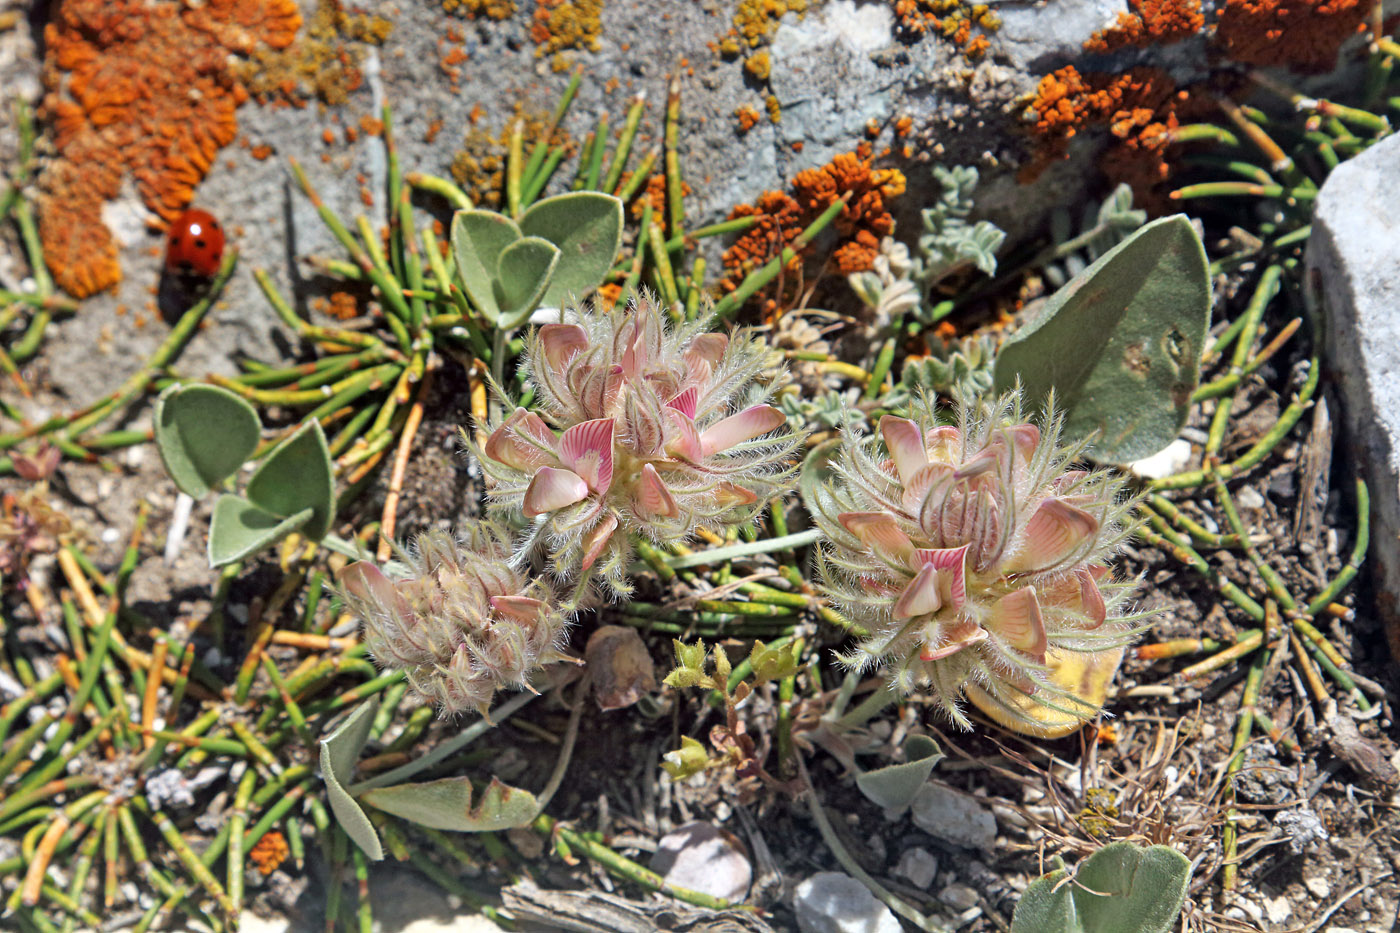 Image of Hedysarum plumosum specimen.